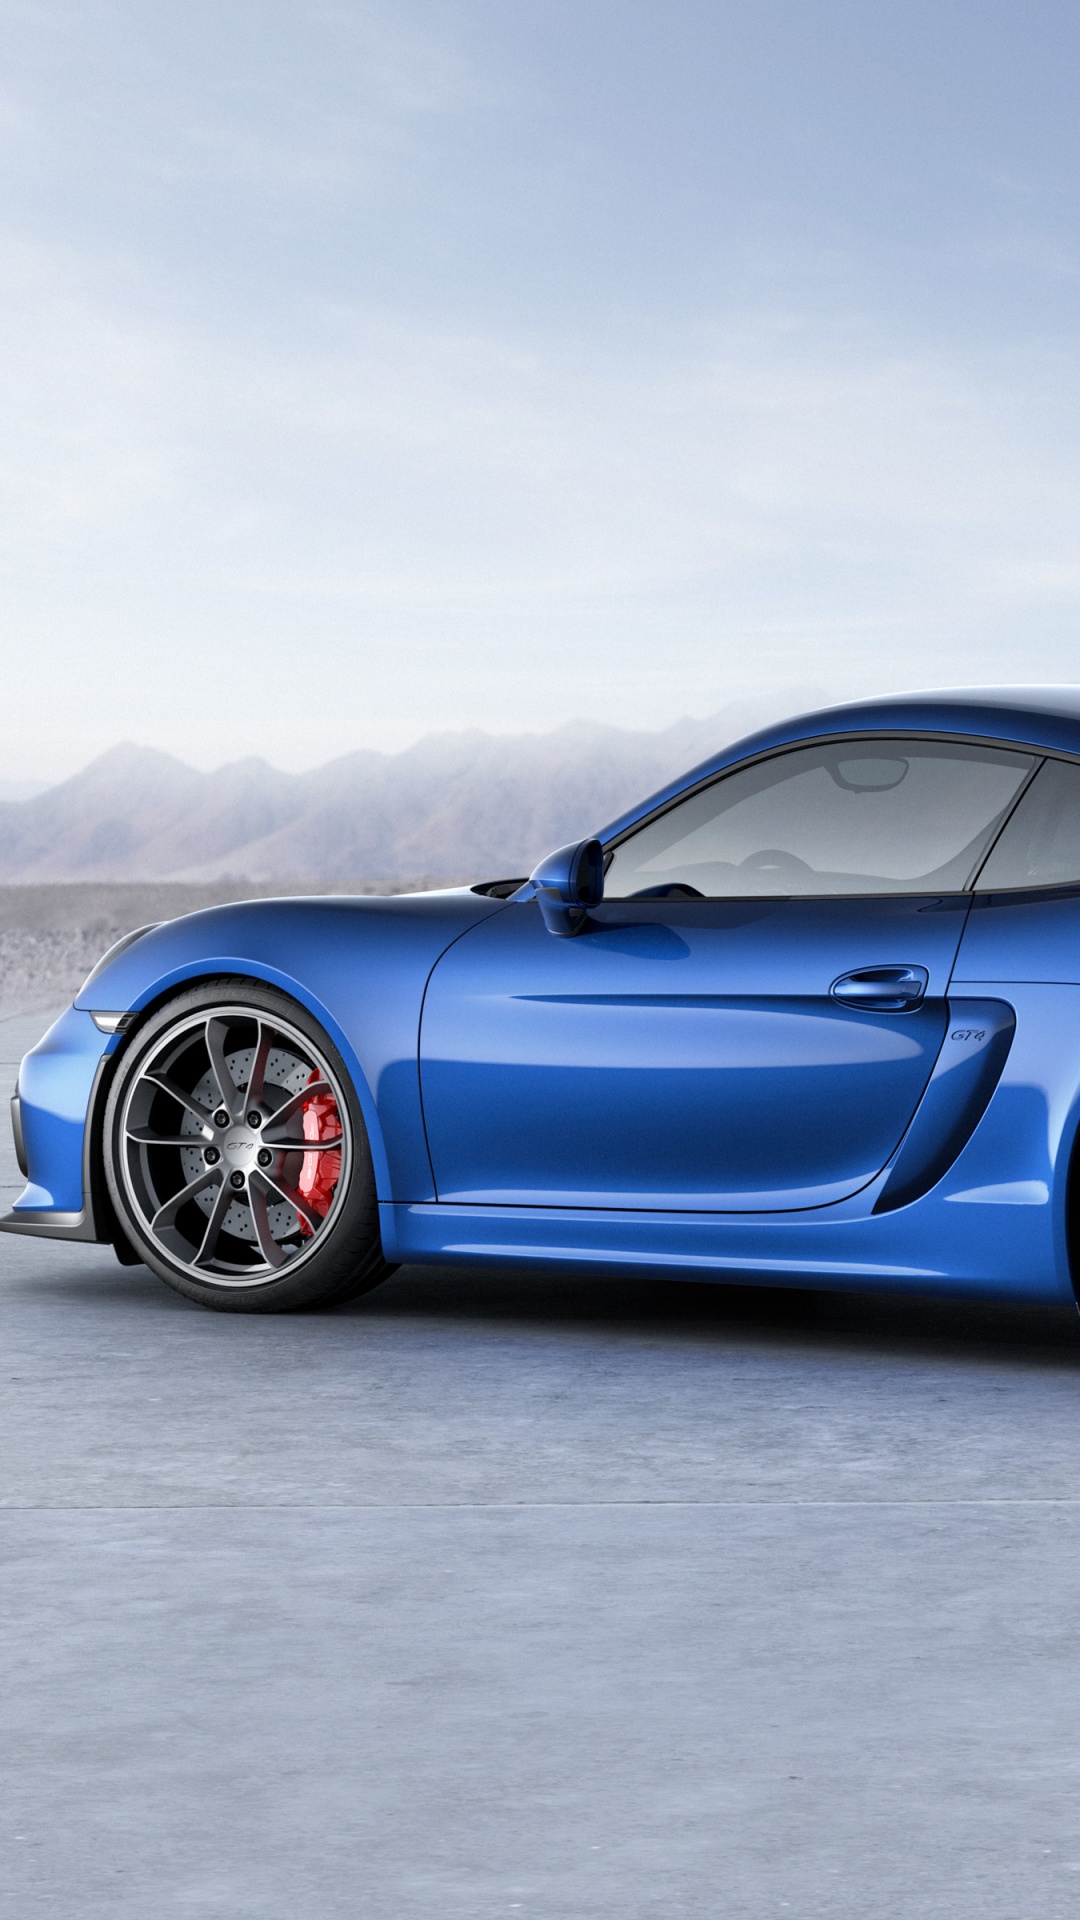 Porsche 911 Azul Sobre Pavimento de Hormigón Gris. Wallpaper in 1080x1920 Resolution